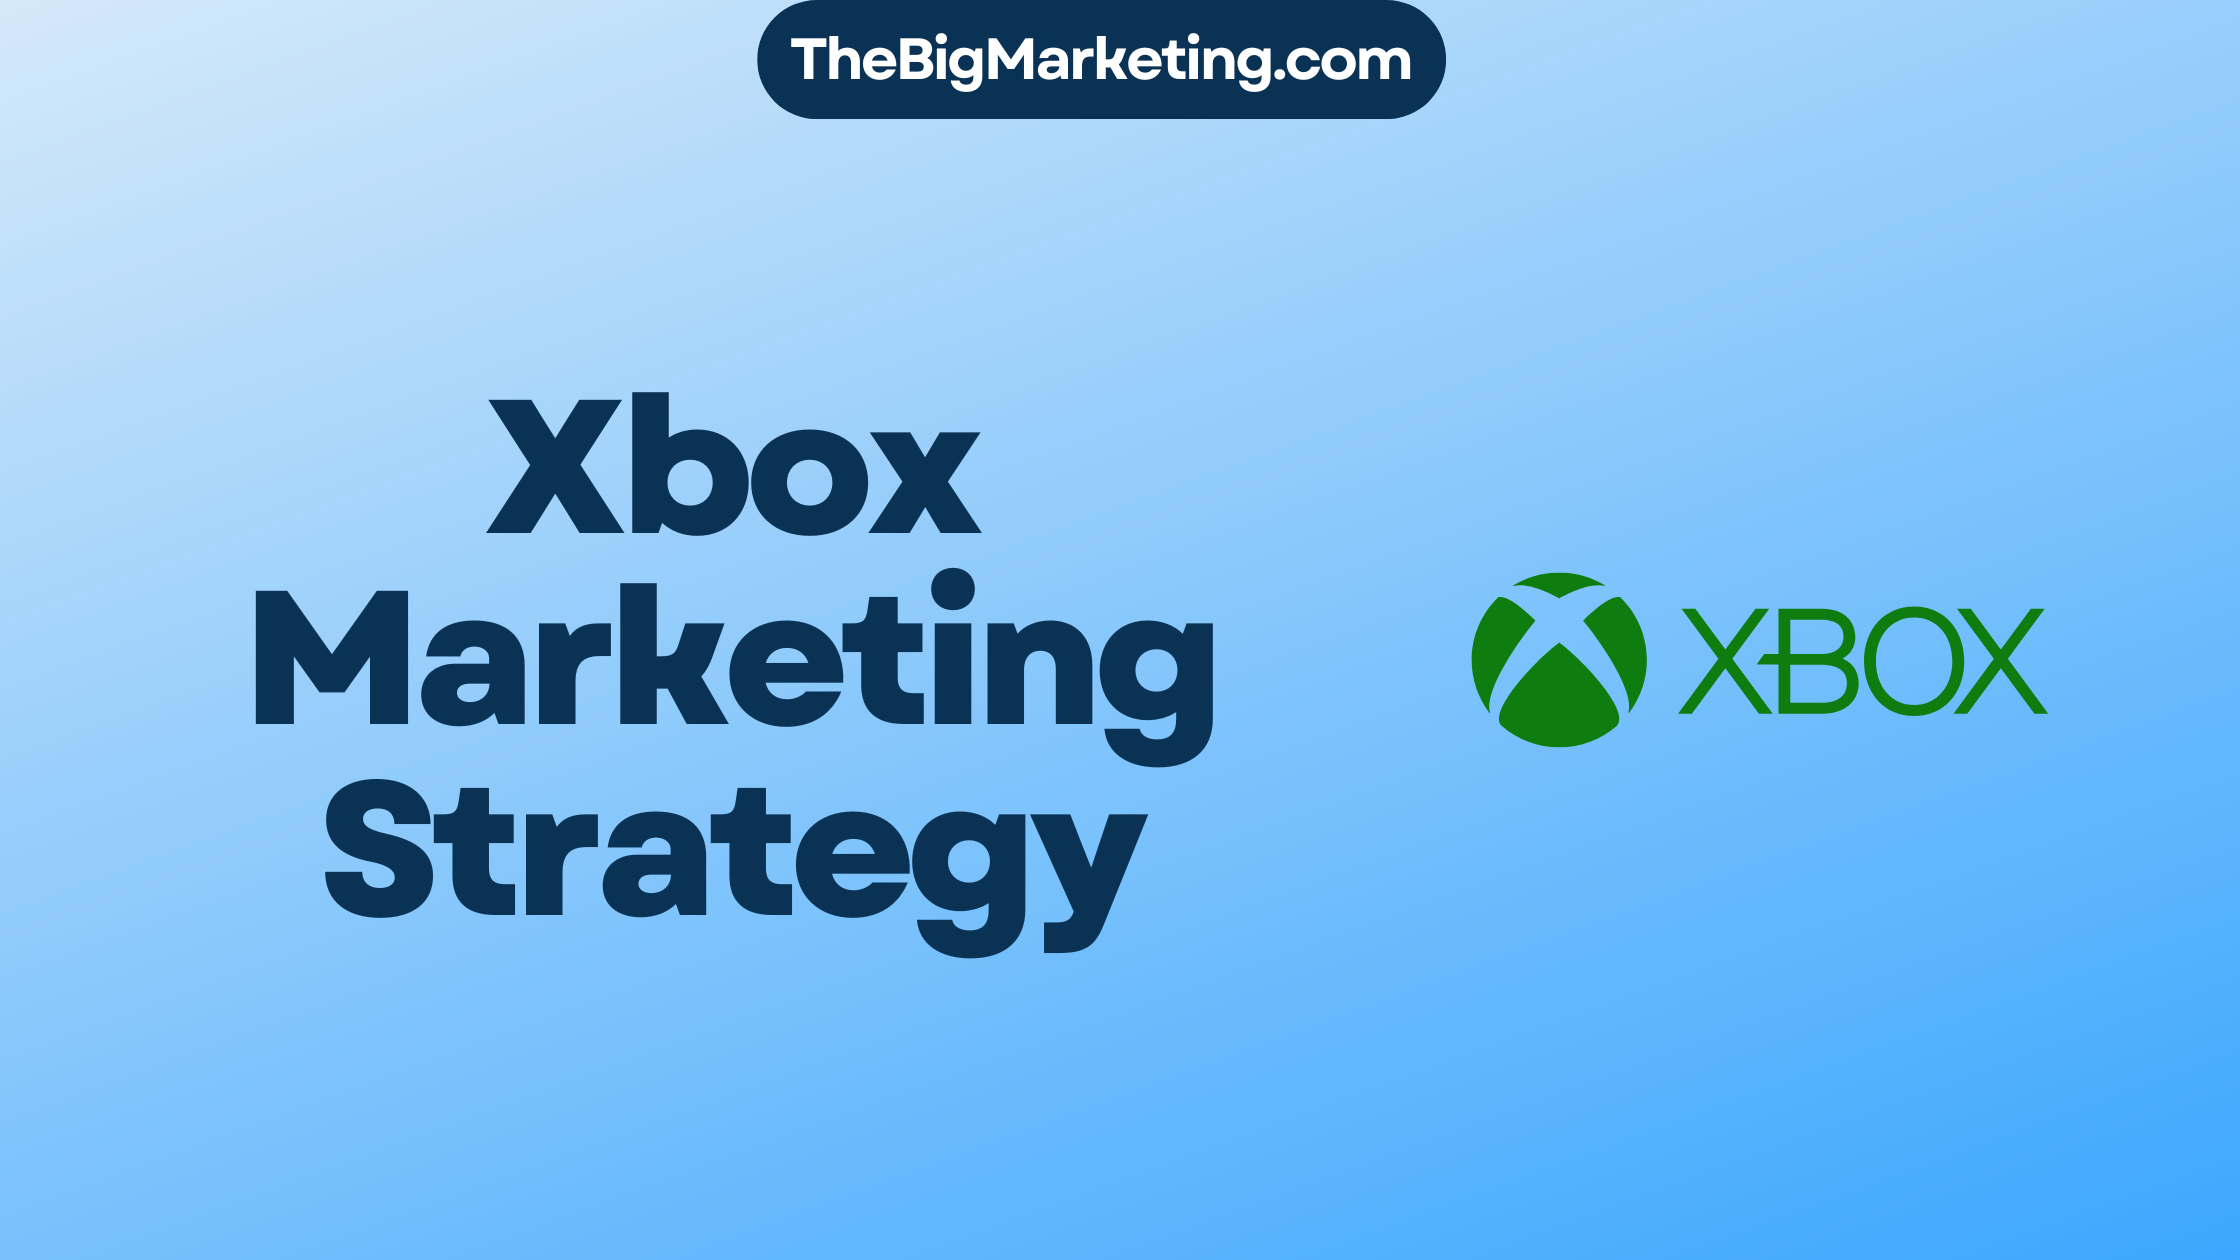 Xbox Marketing Strategy